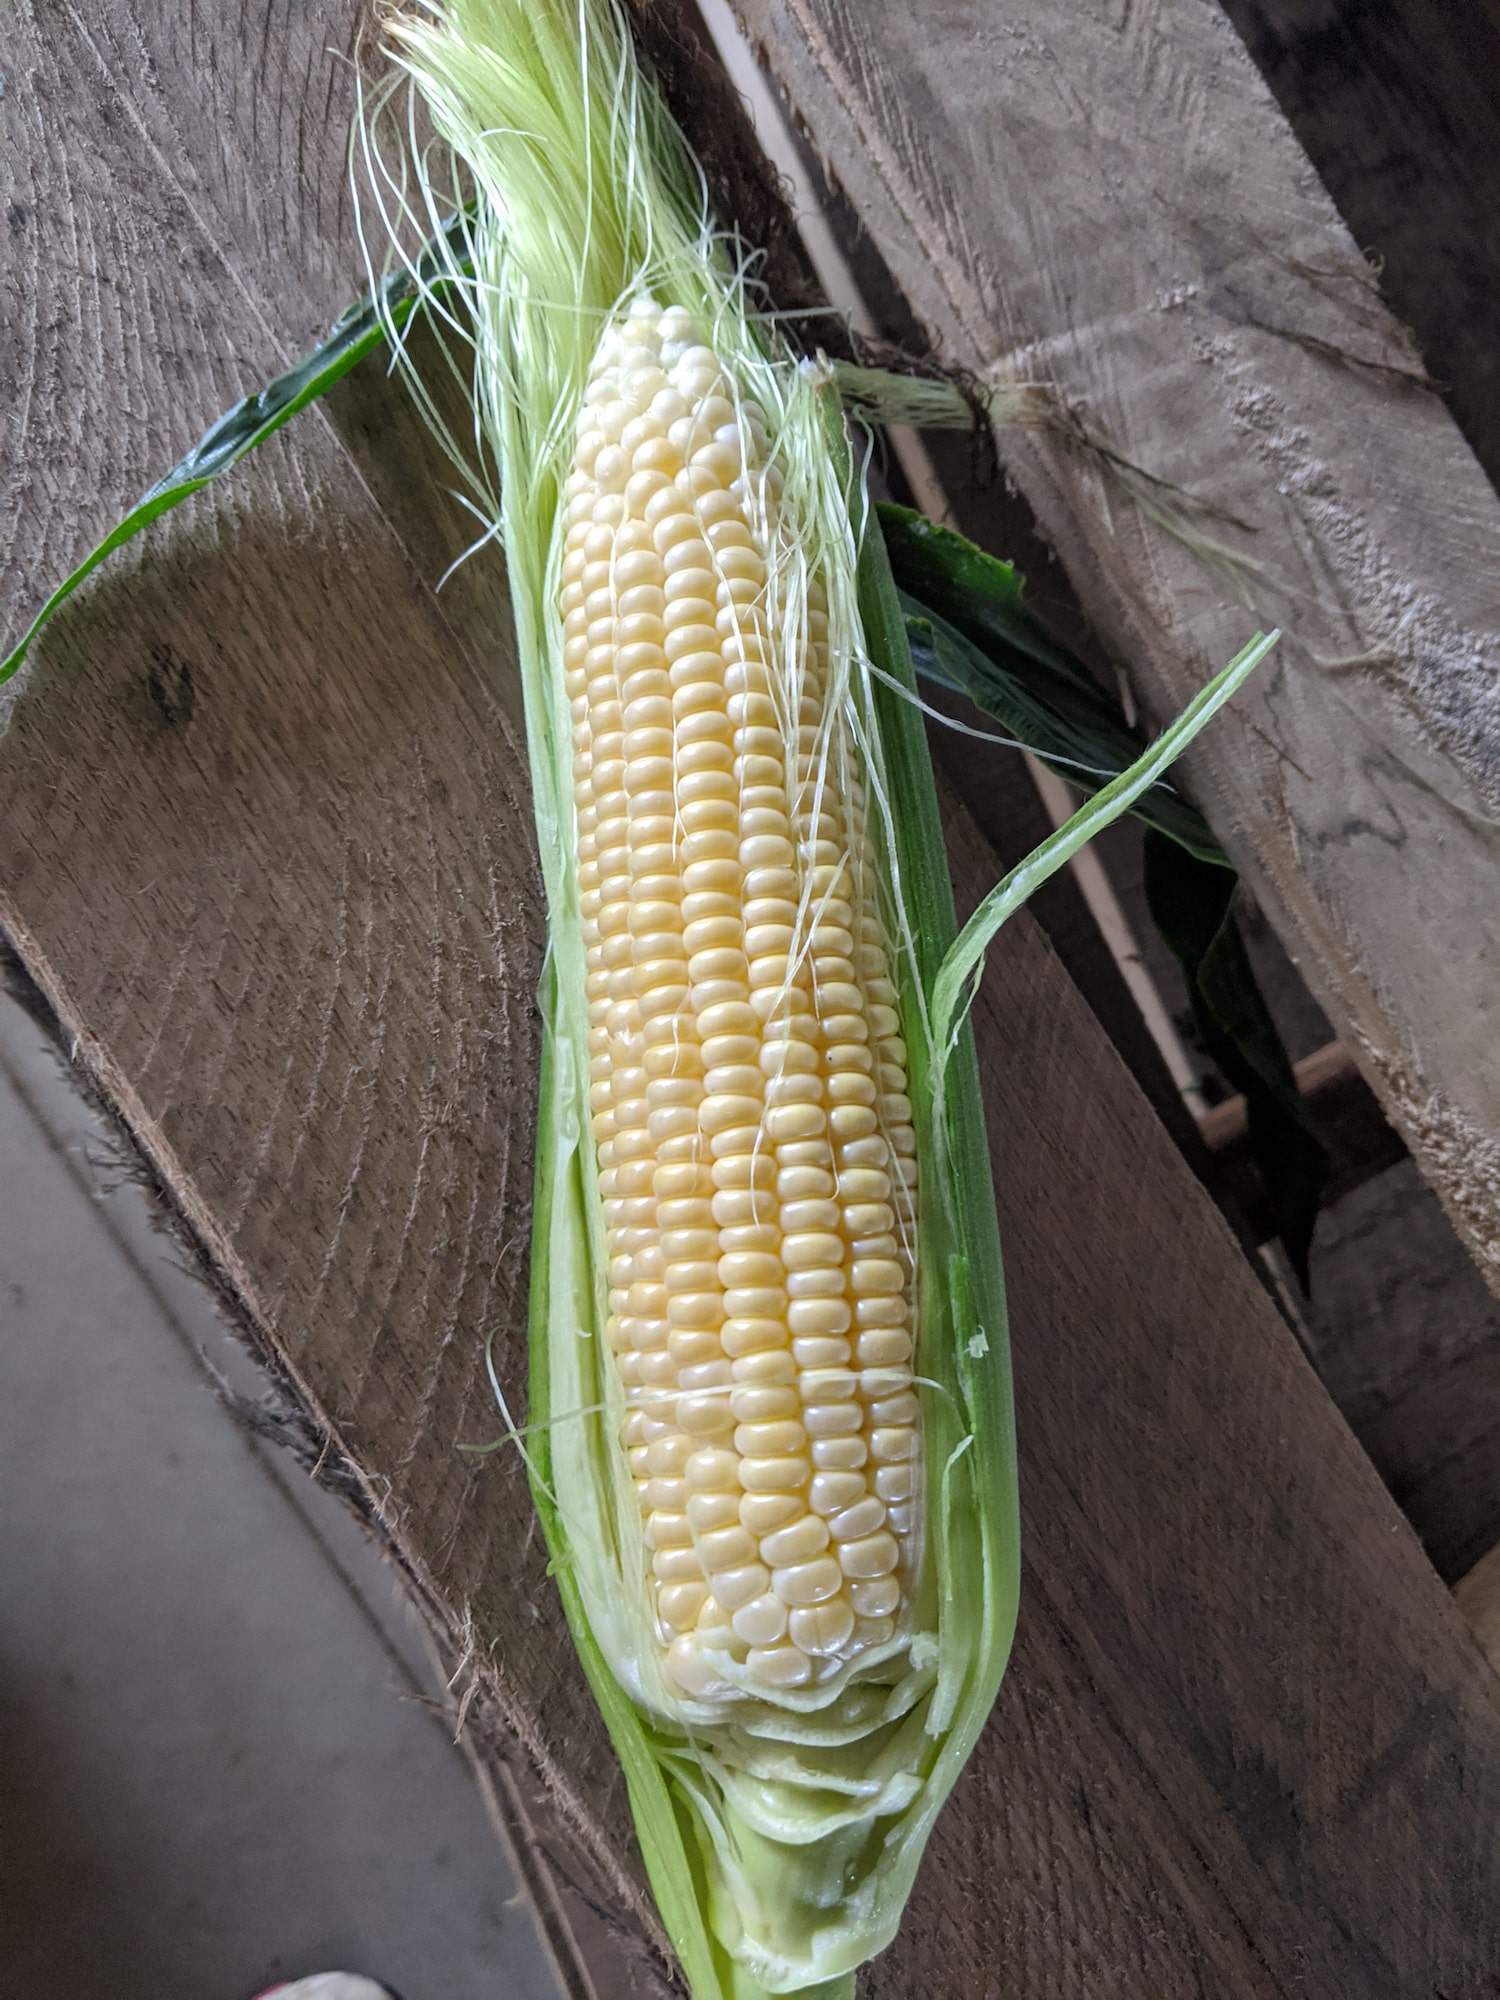 Sweet corn!